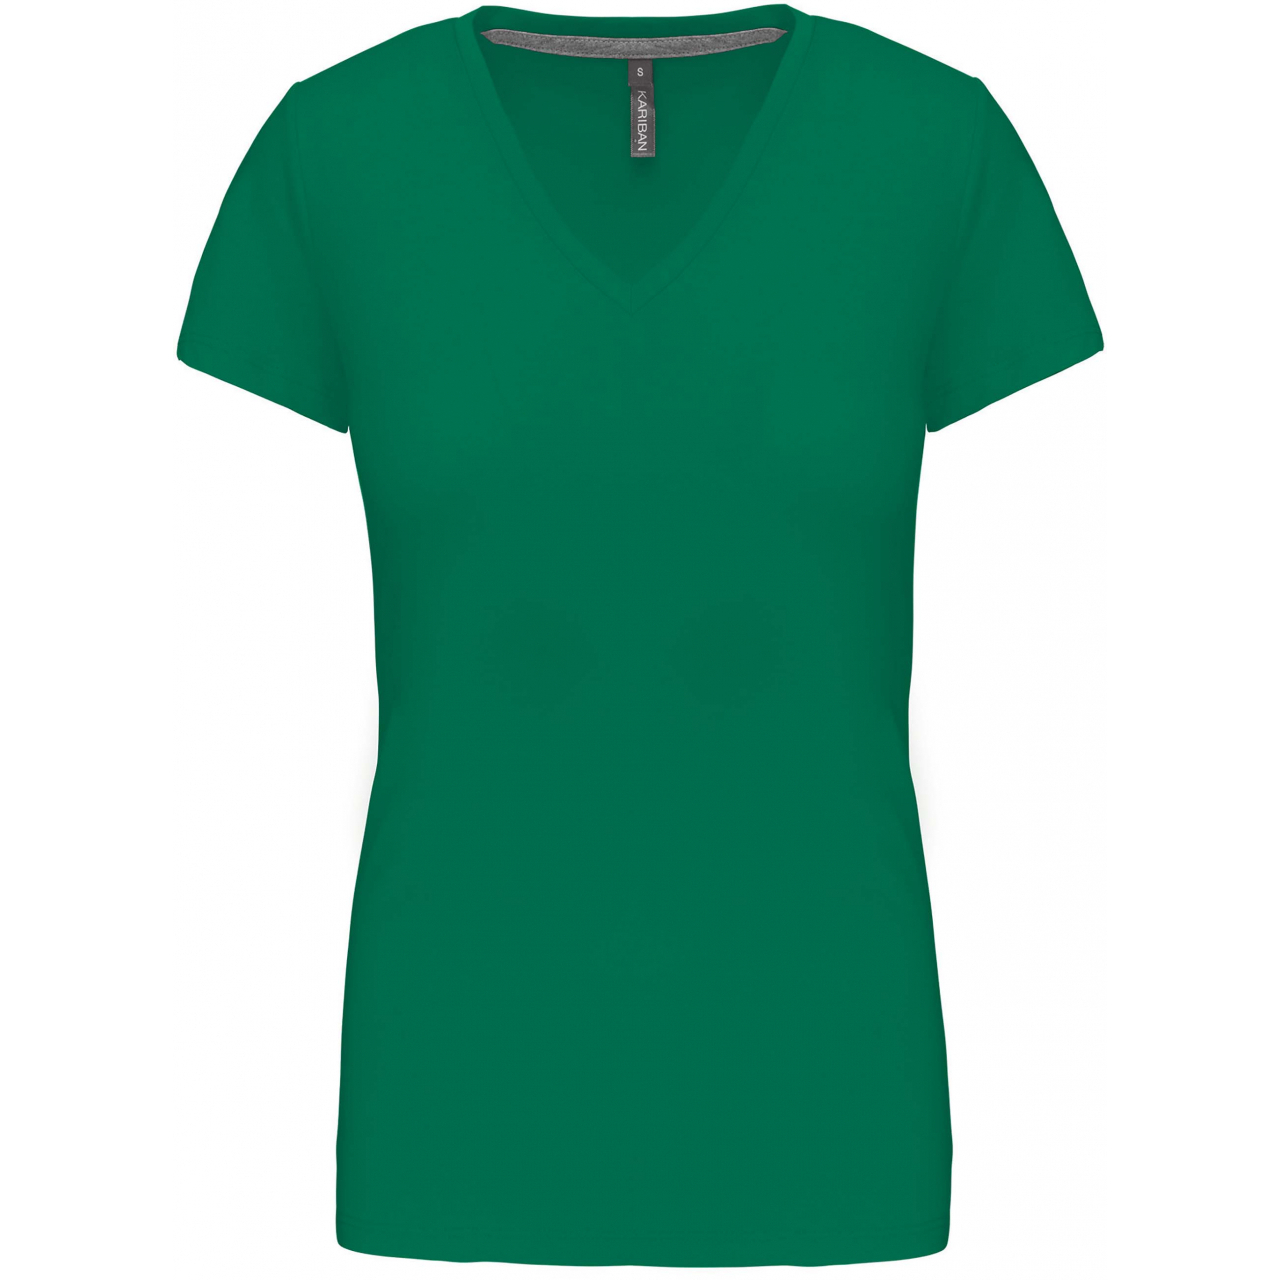 Dámské tričko Kariban V-neck s krátkým rukávem - zelené, S